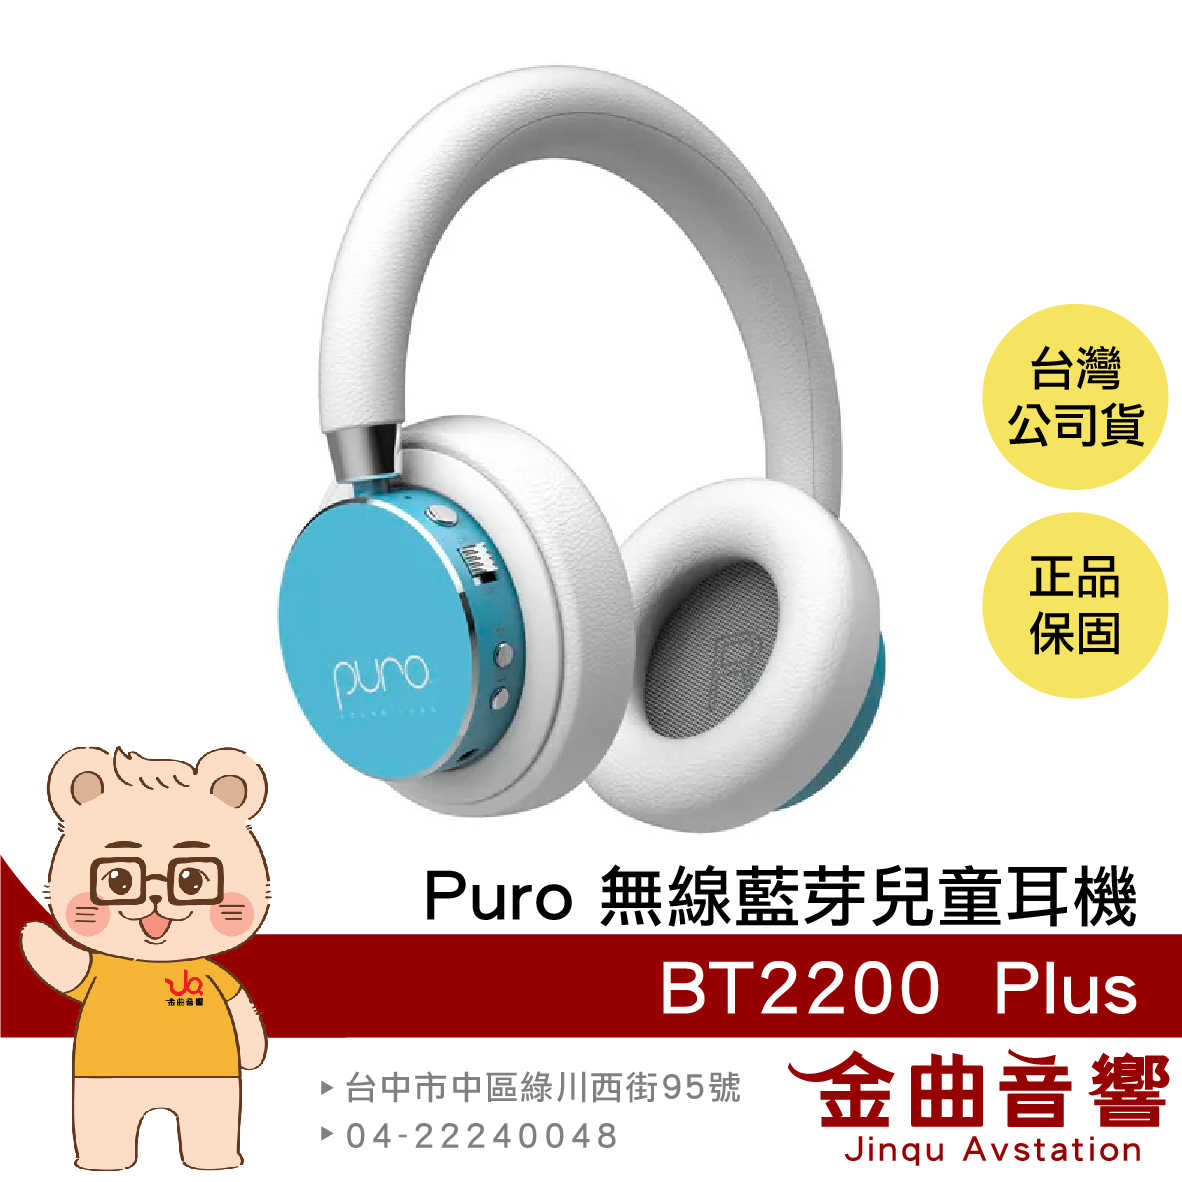 Puro BT2200 Plus 薄荷藍色 安全音量 音樂分享 可替換耳罩 耳罩式 無線 藍牙 兒童耳機 | 金曲音響